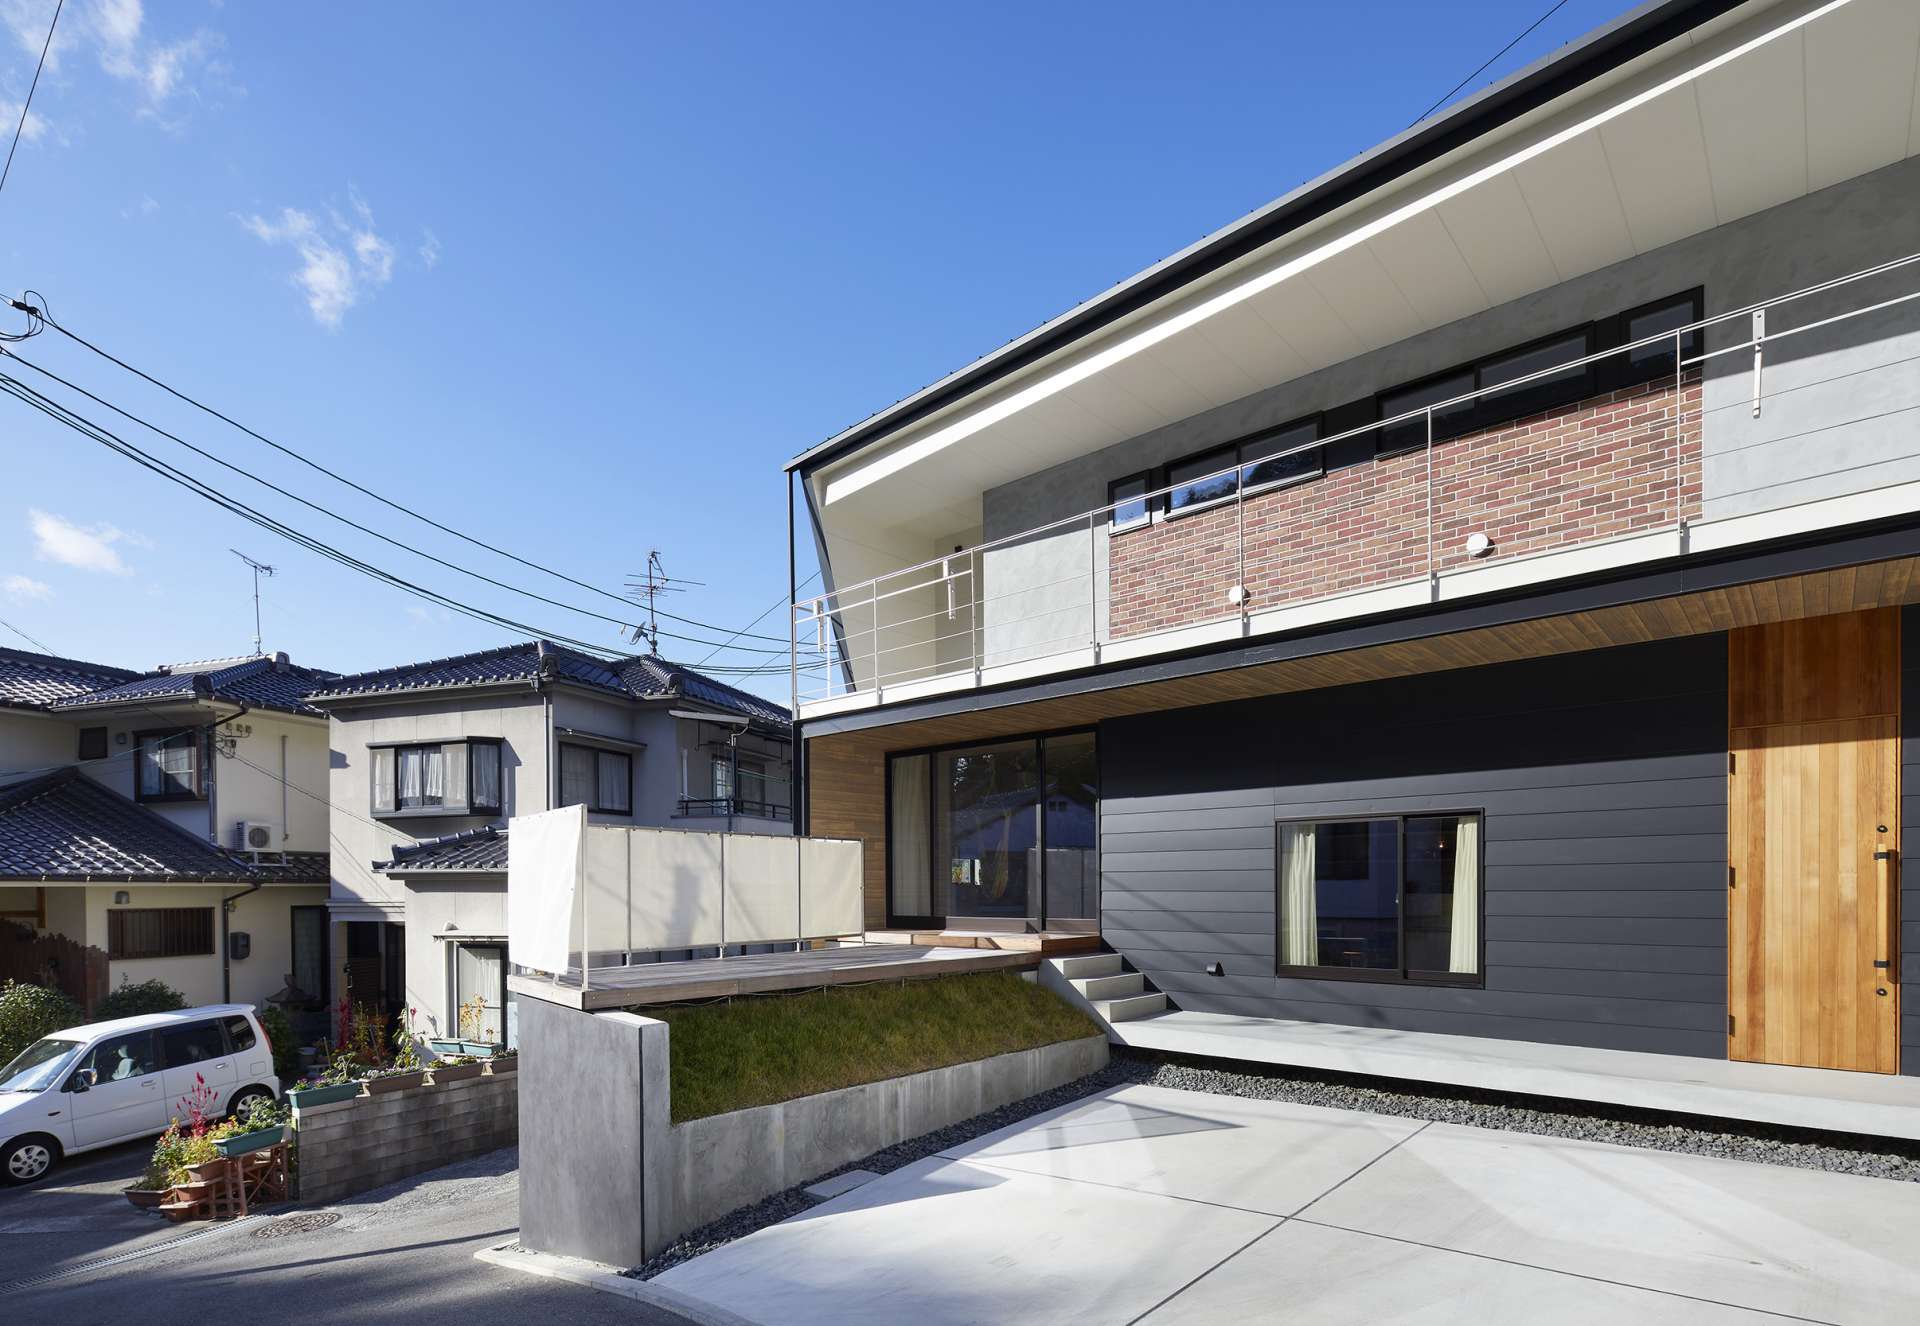 尾道で注文住宅のデザインやリノベーションのデザインは設計事務所asazu design office